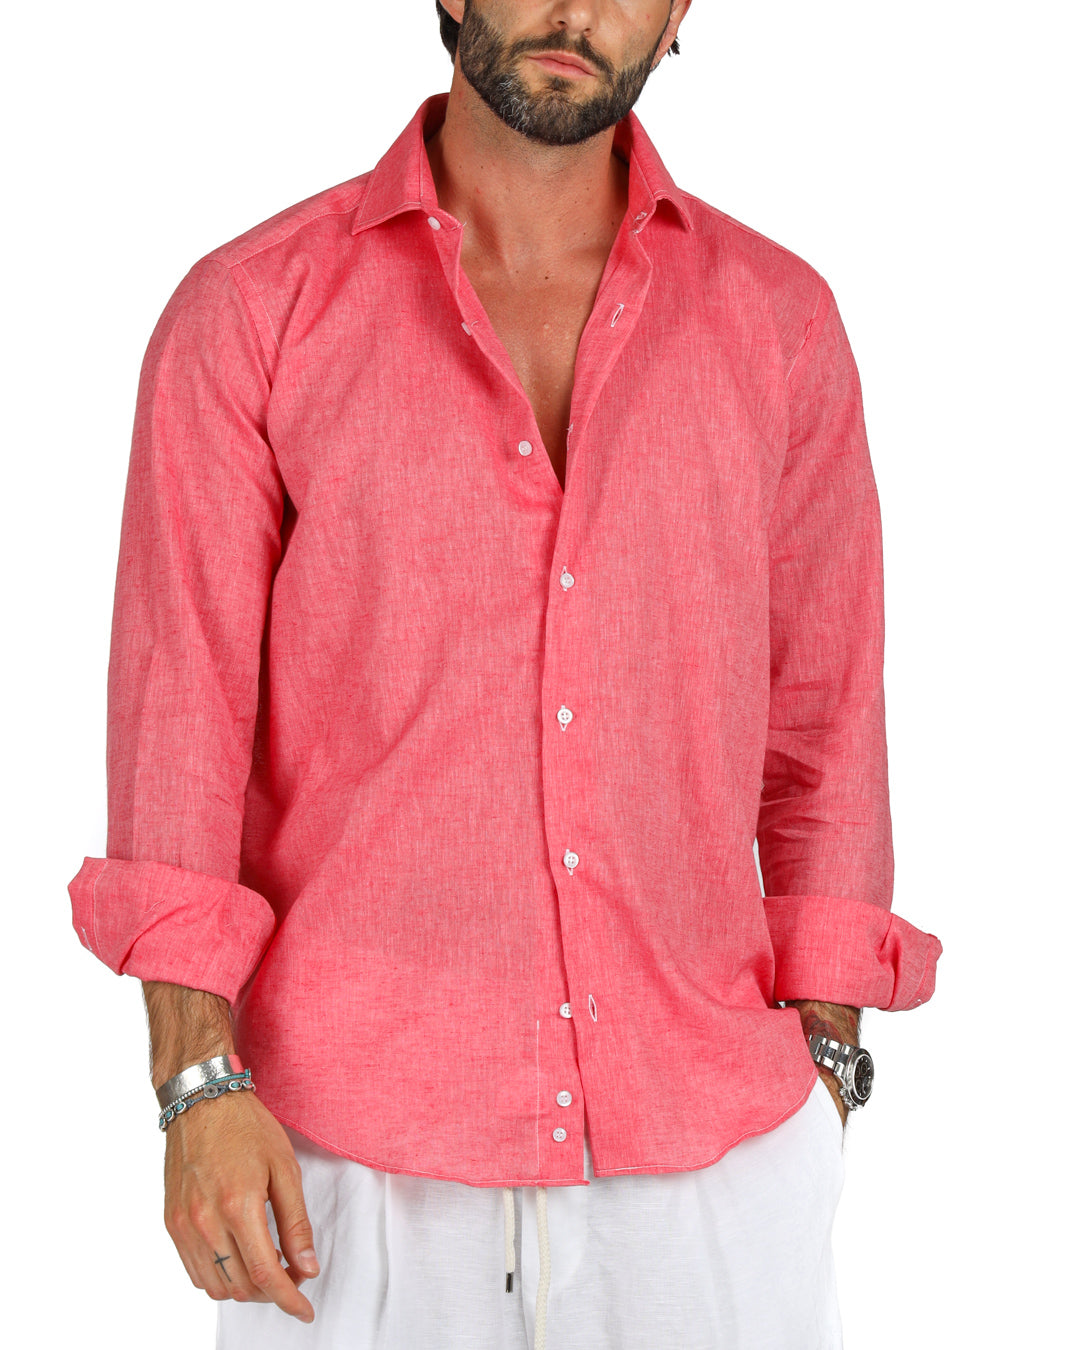 Praiano - La chemise classique en lin corail